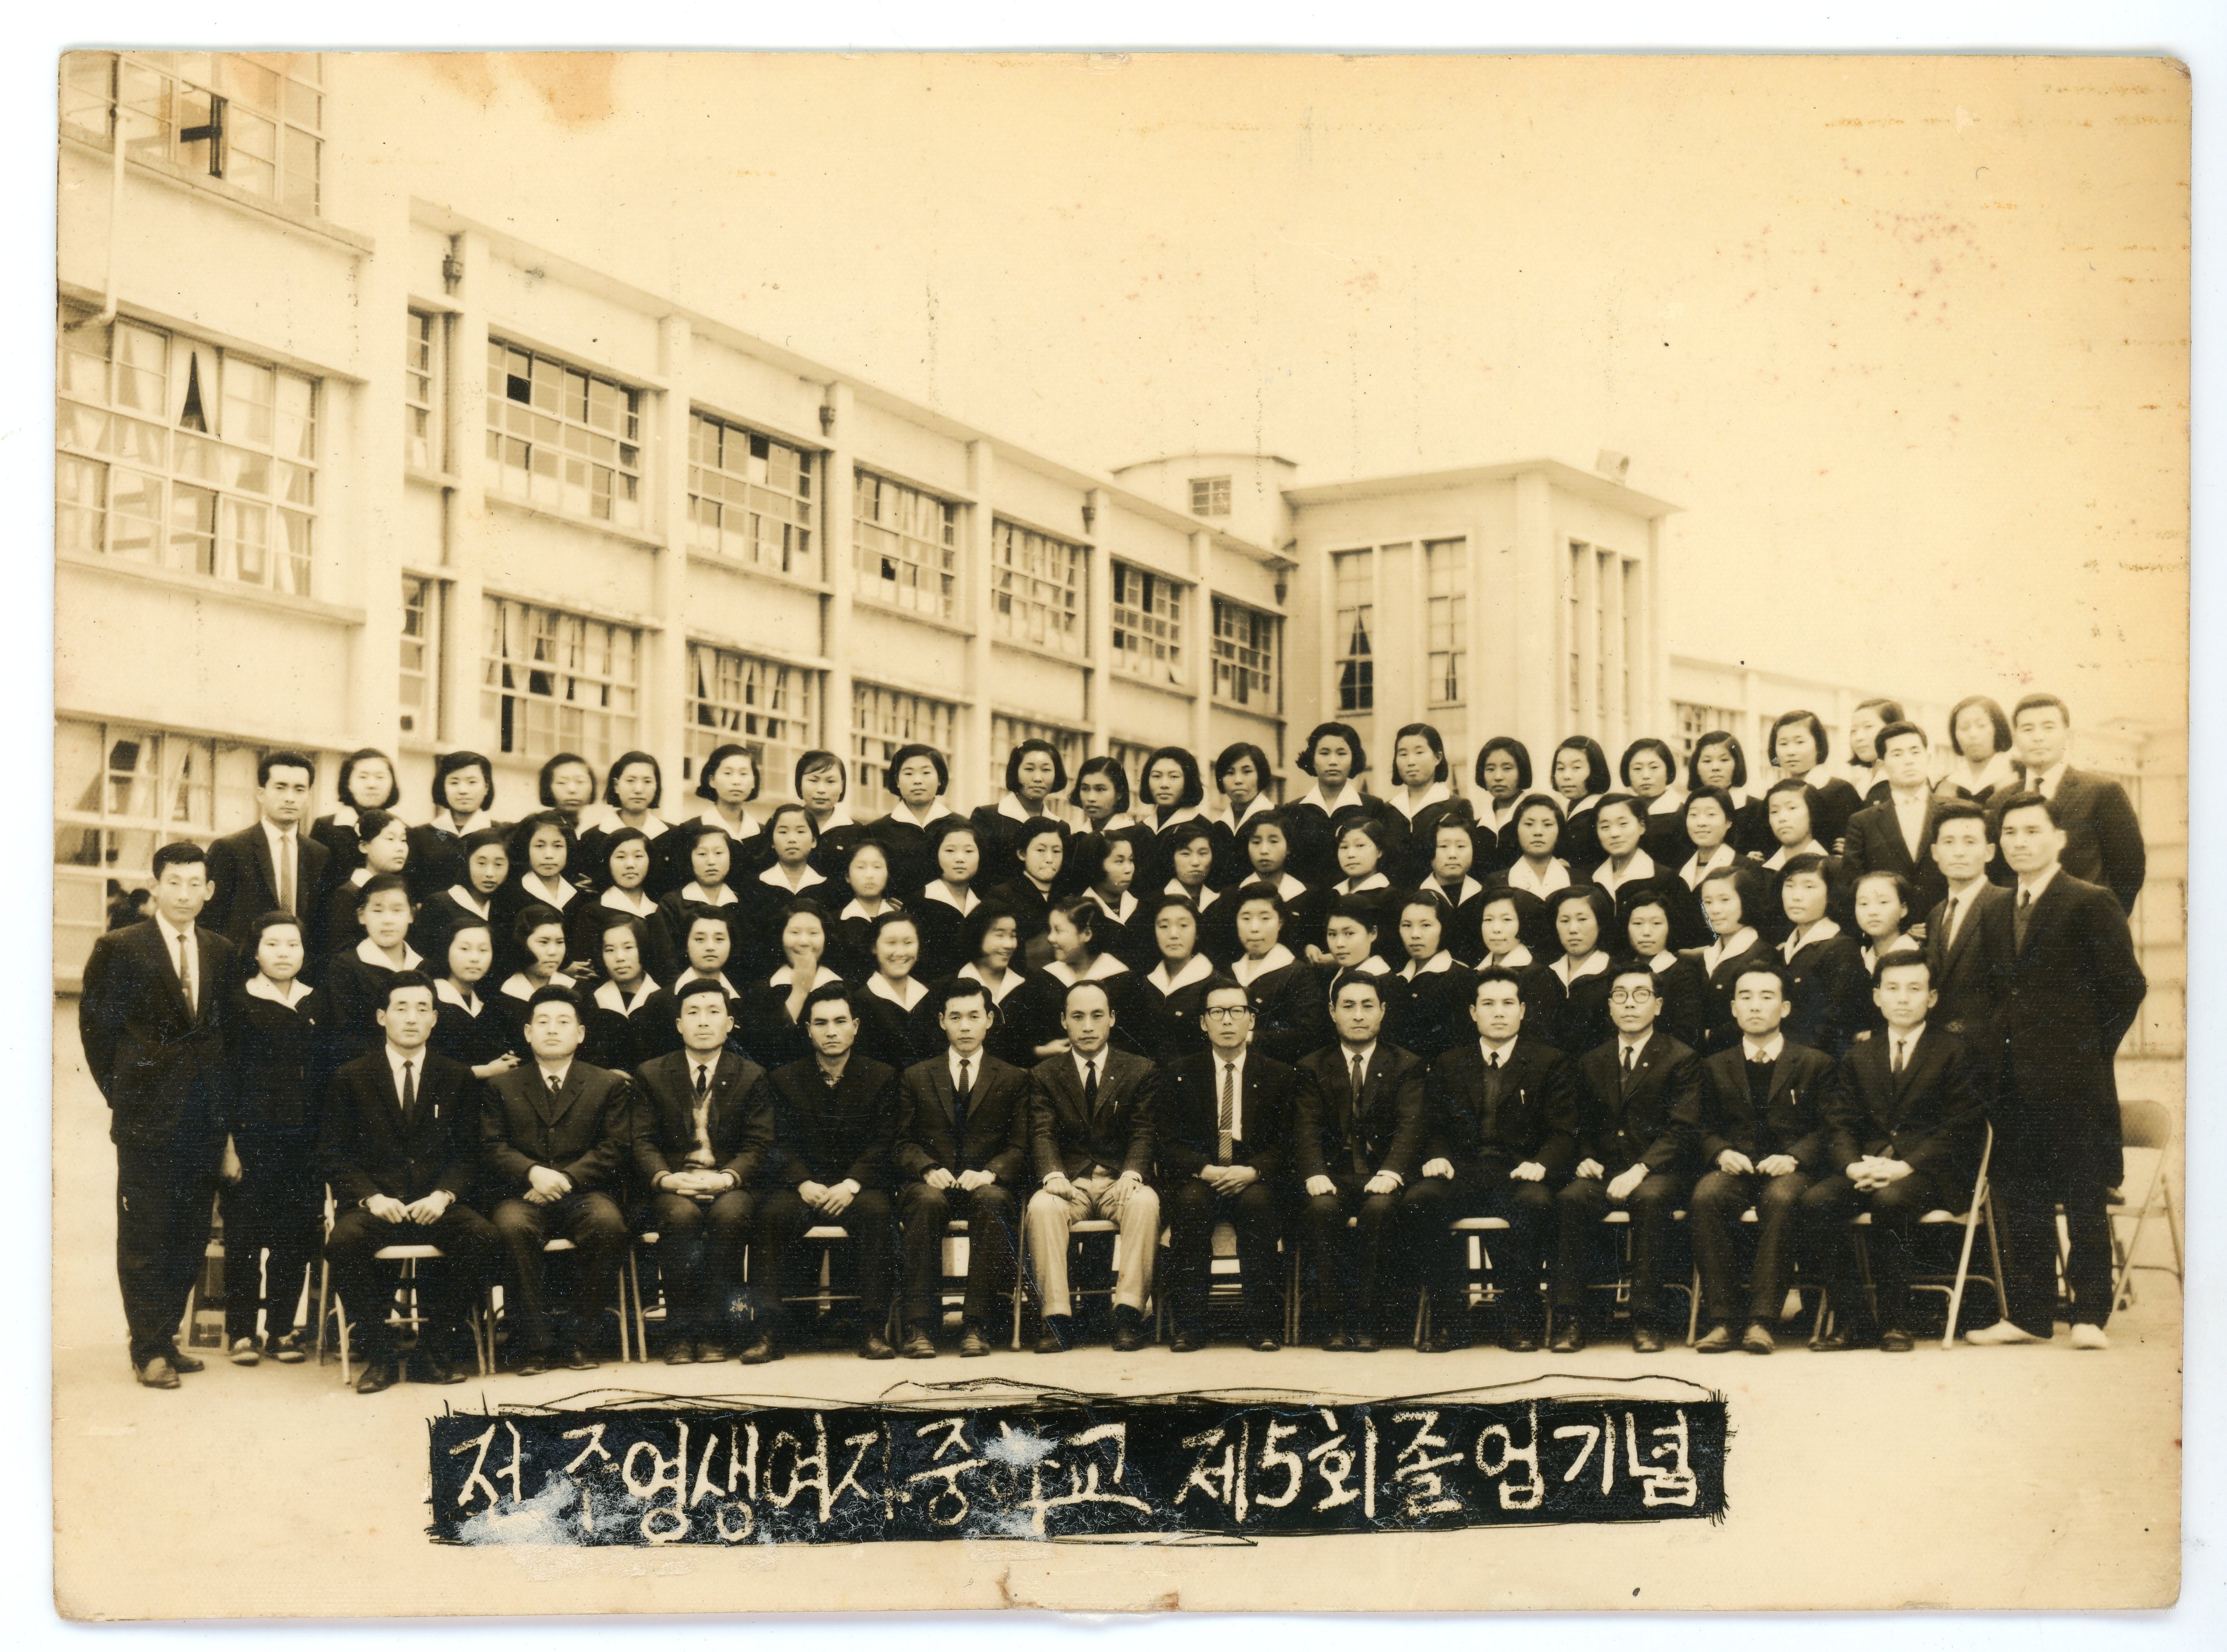 도순례_전주영생여자중학교 제5회 졸업기념 사진(1968년).jpg